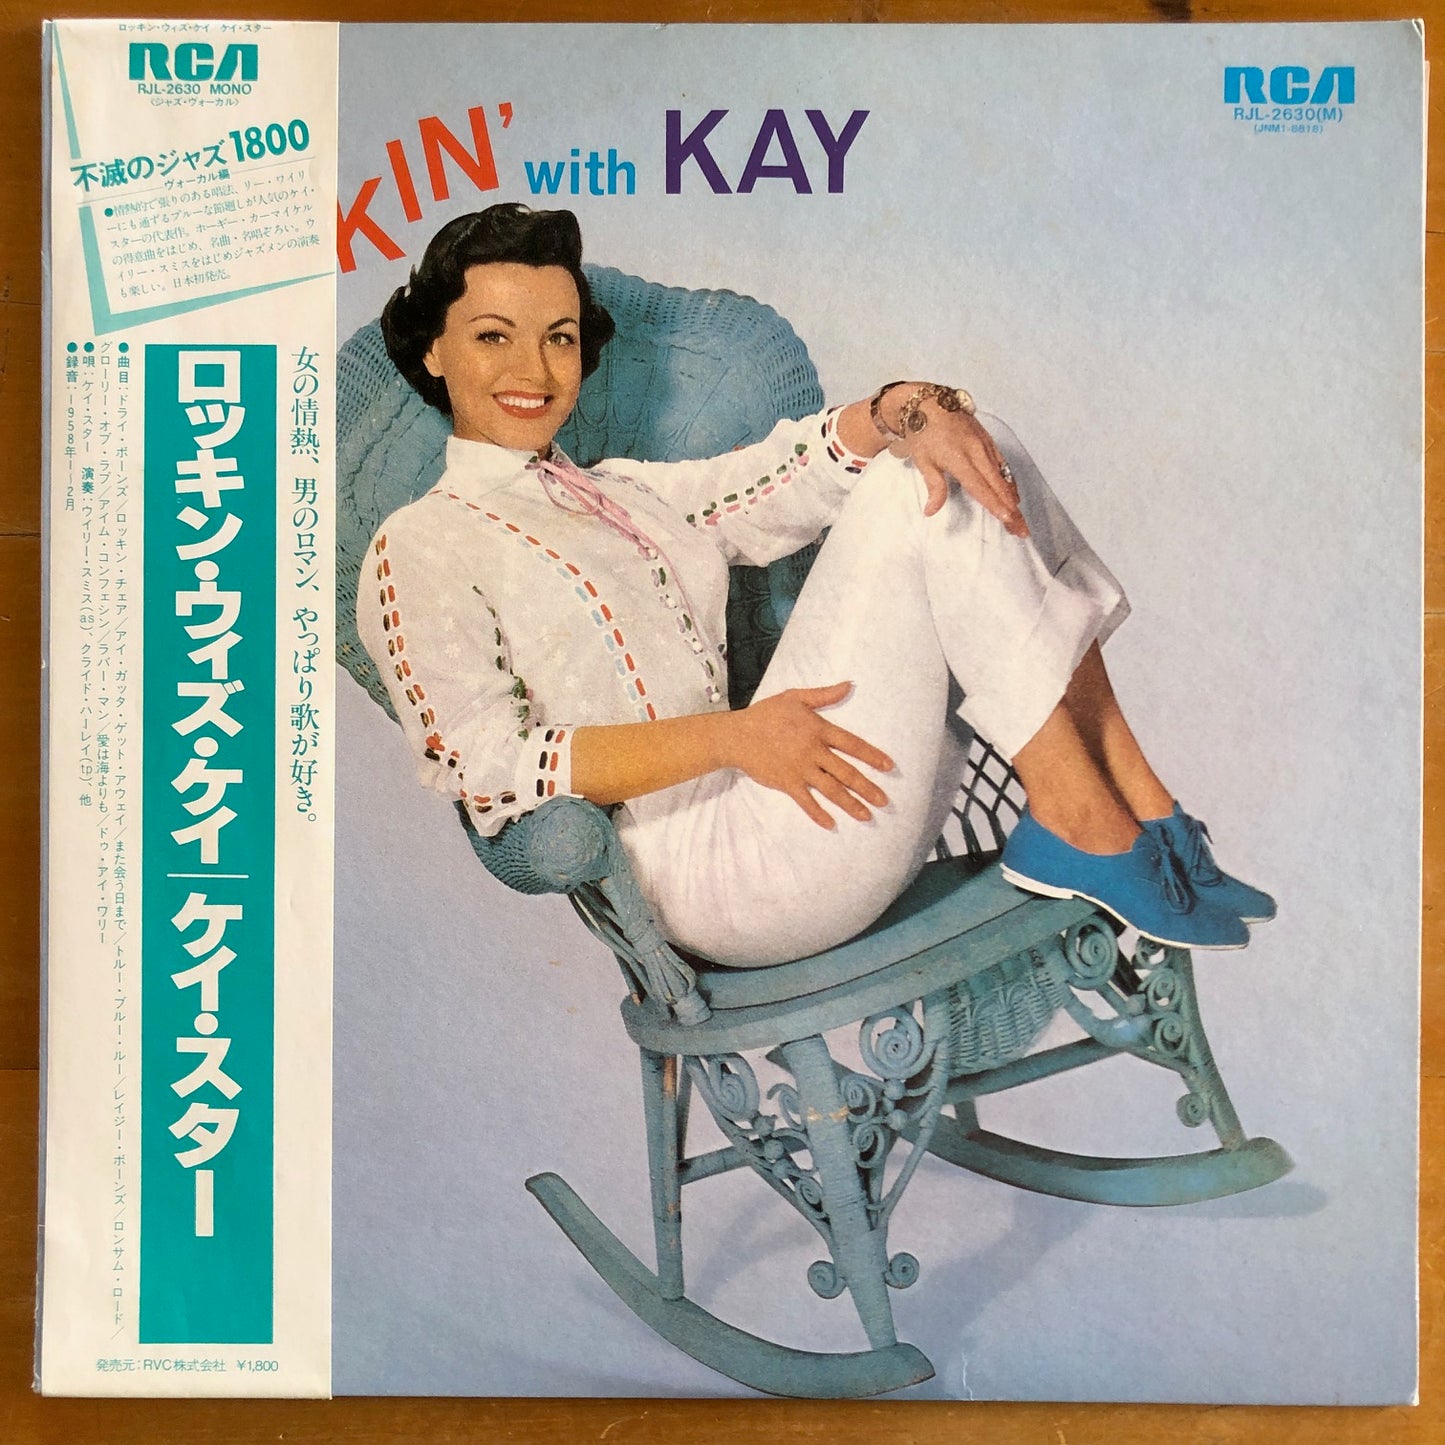 Kay Starr - Rockin' With Kay